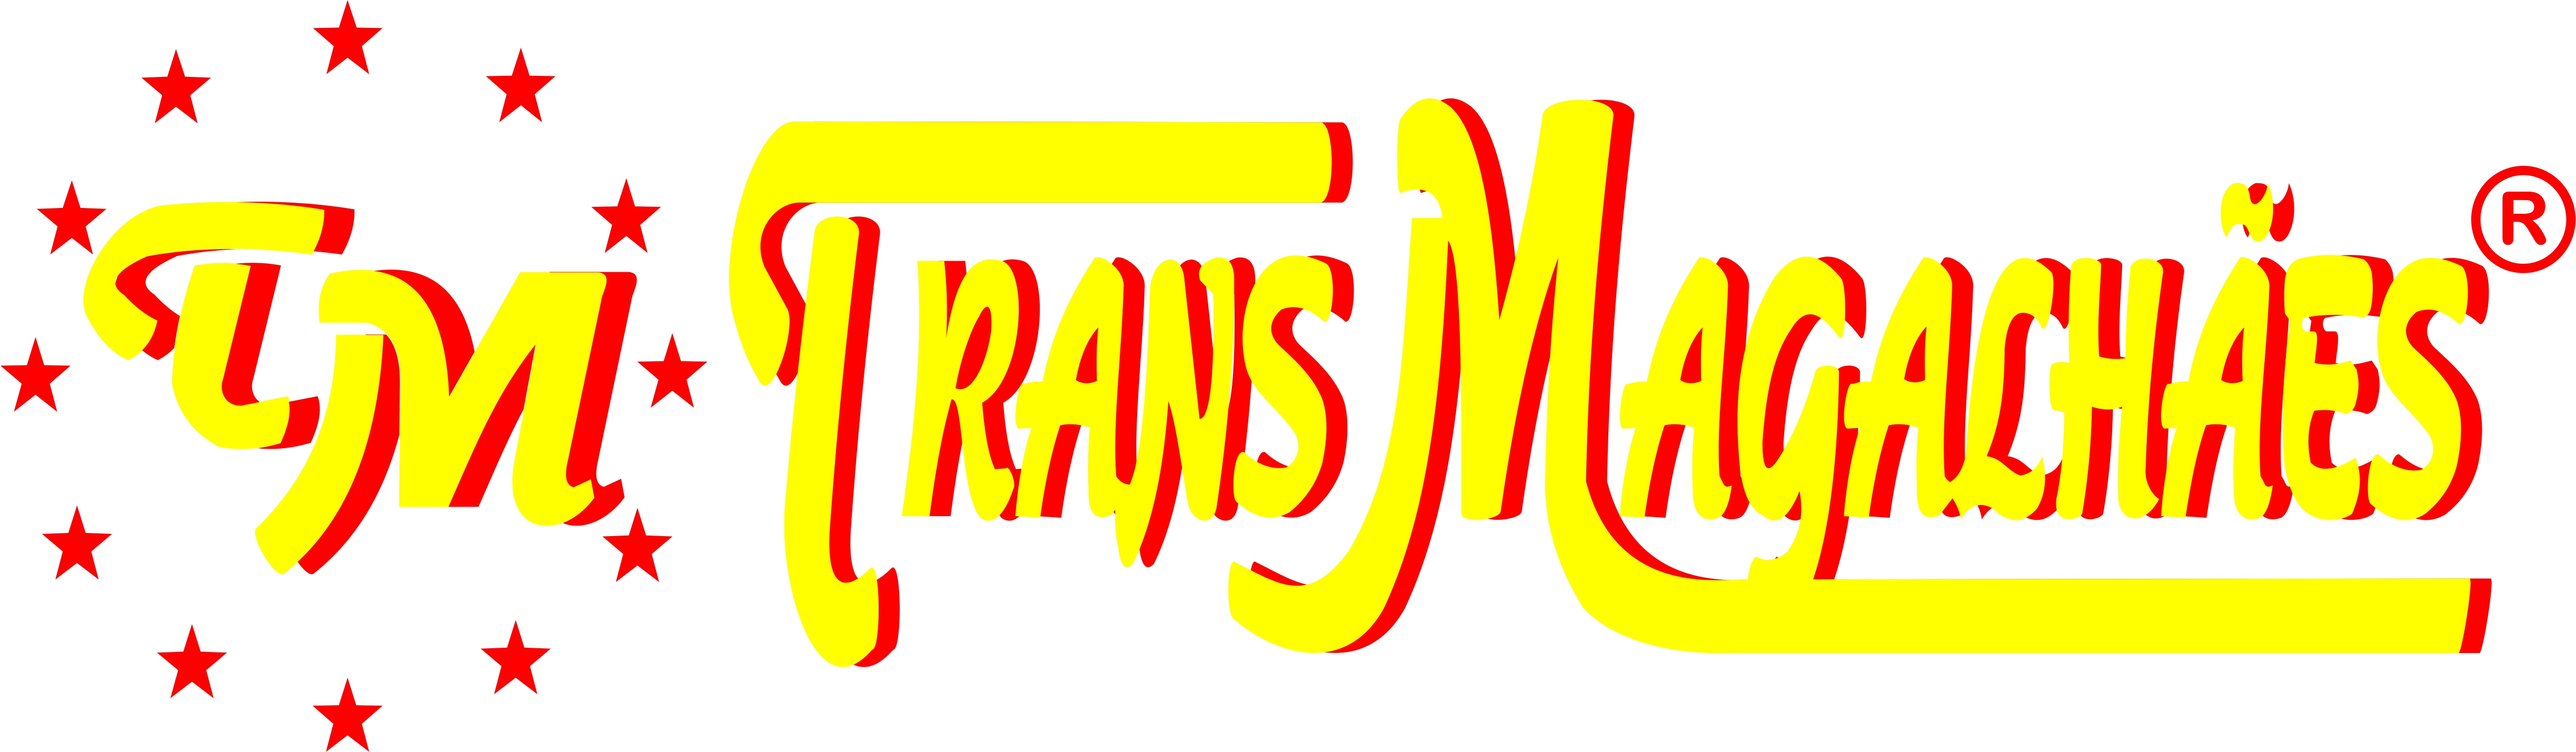 Trans Magalhães - Transportes Lda